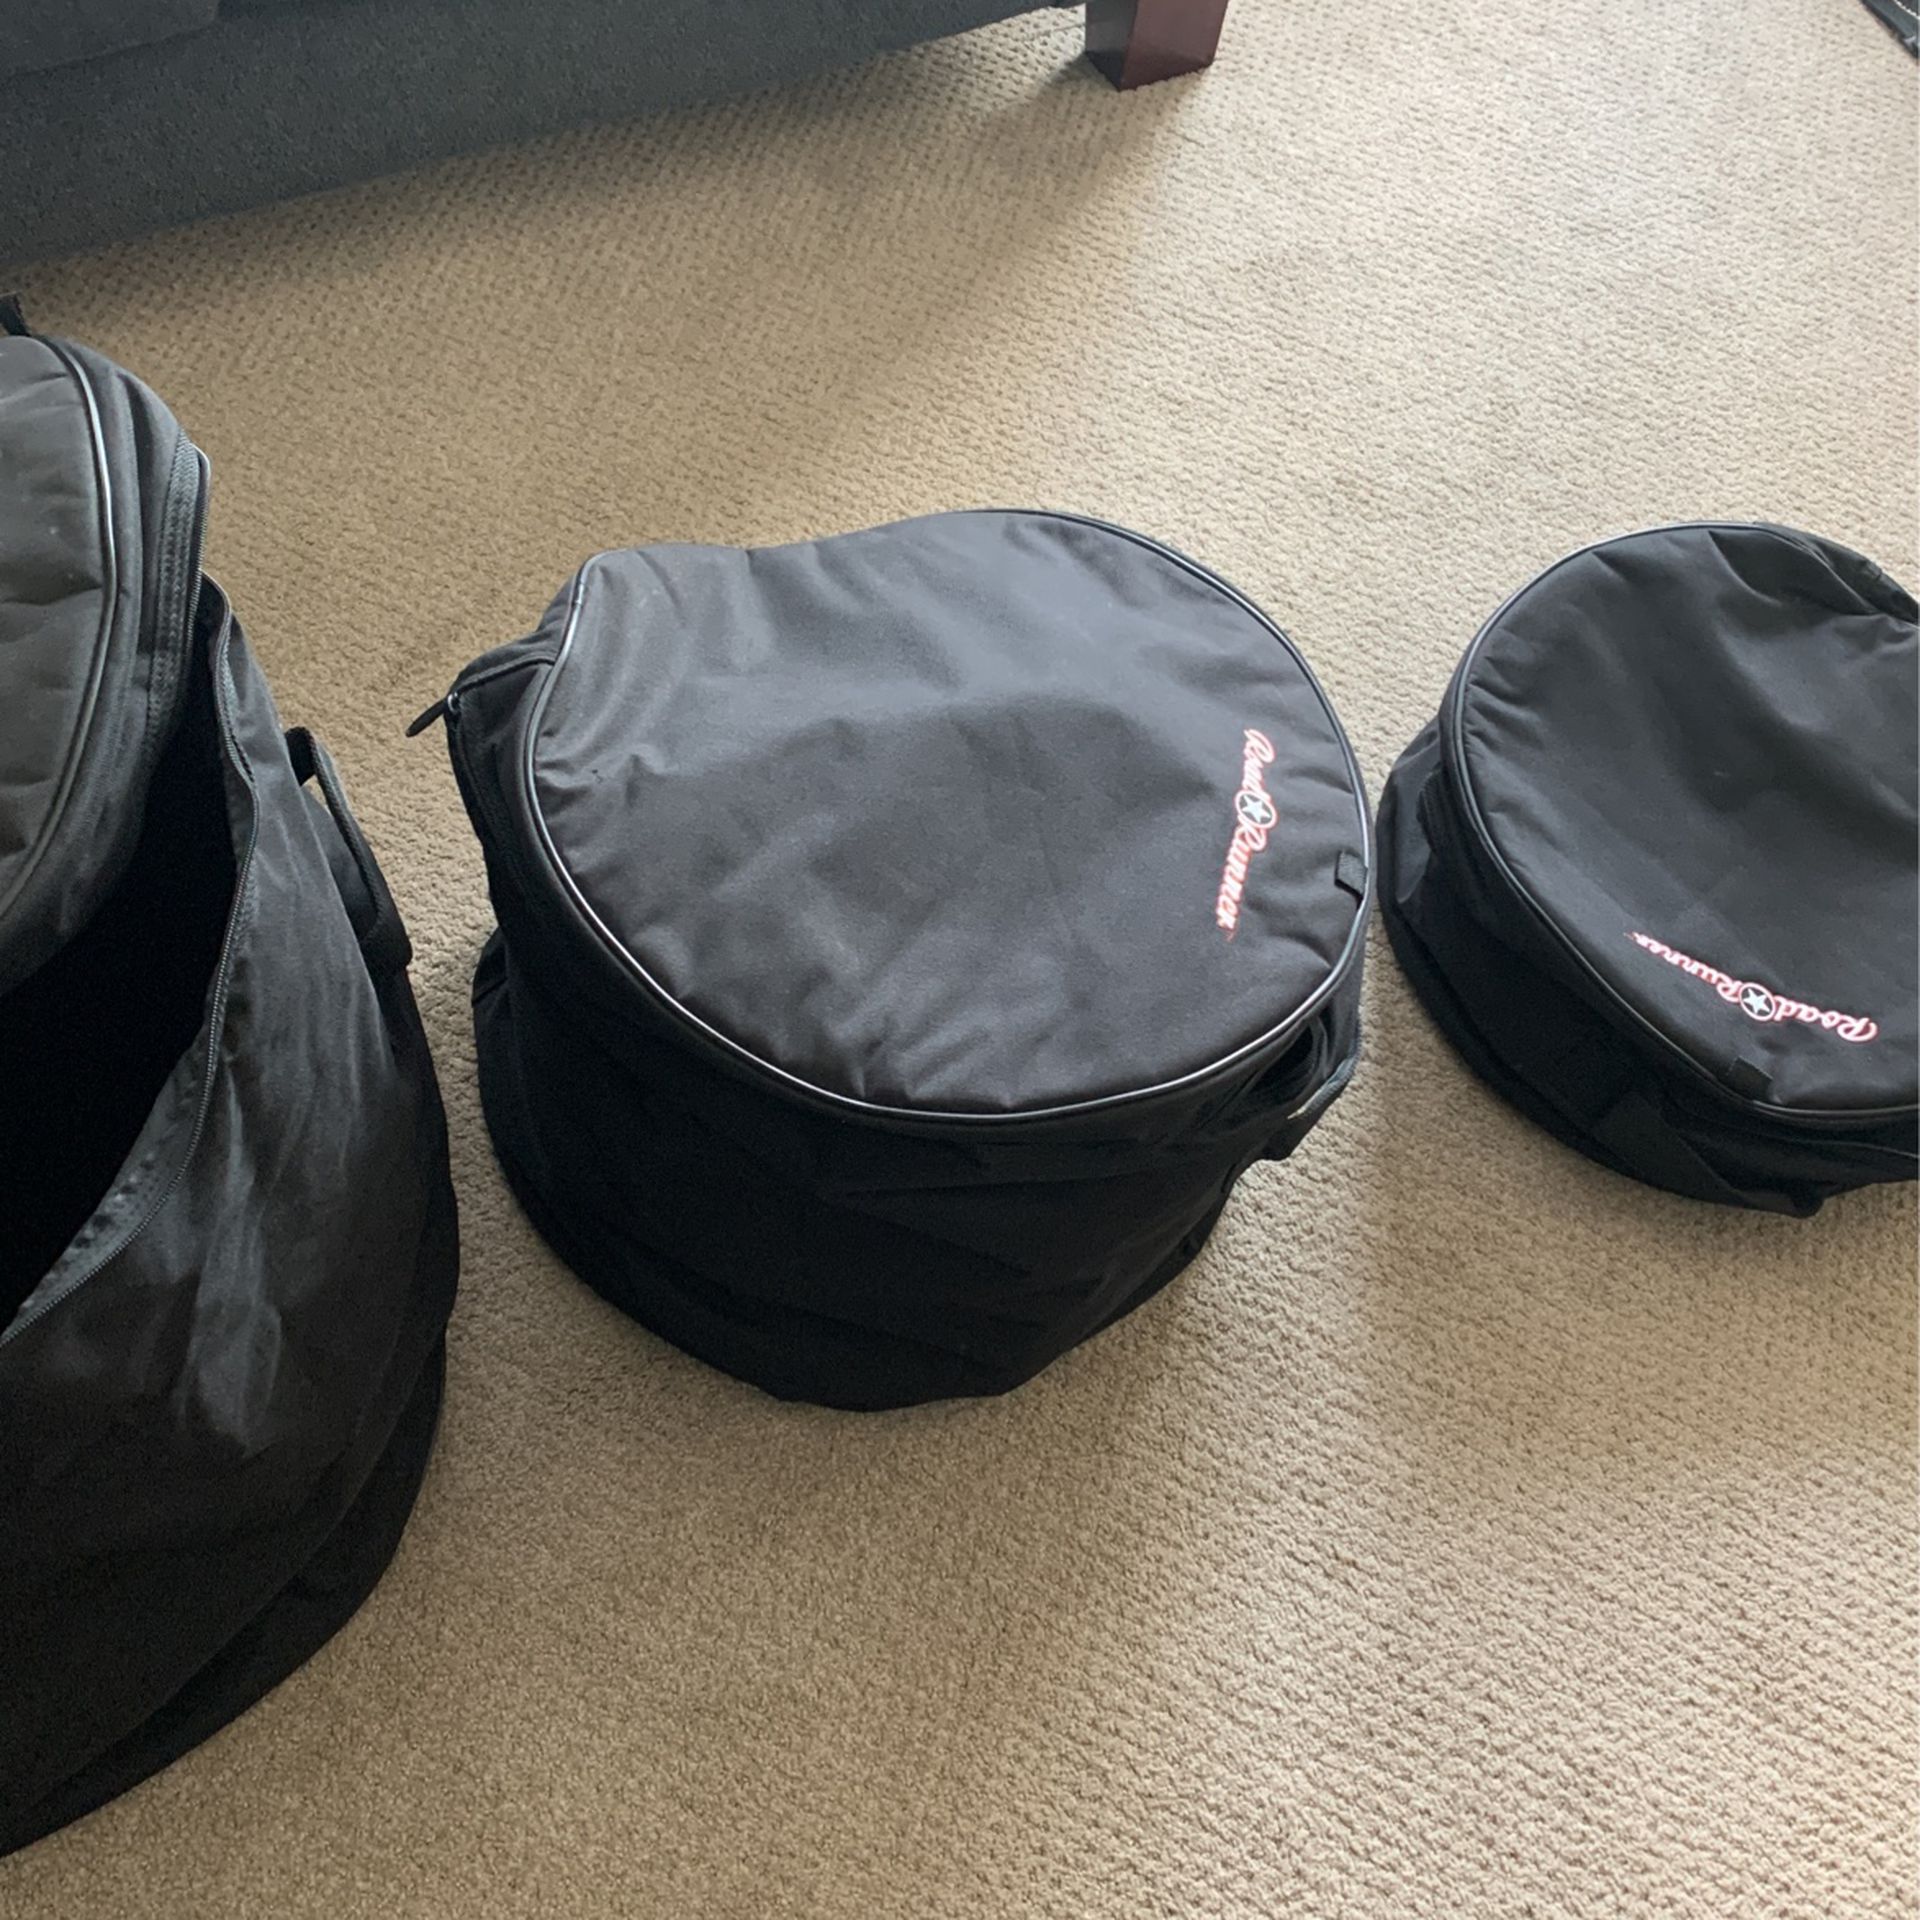 Roadrunner Drum Set Travel Bags